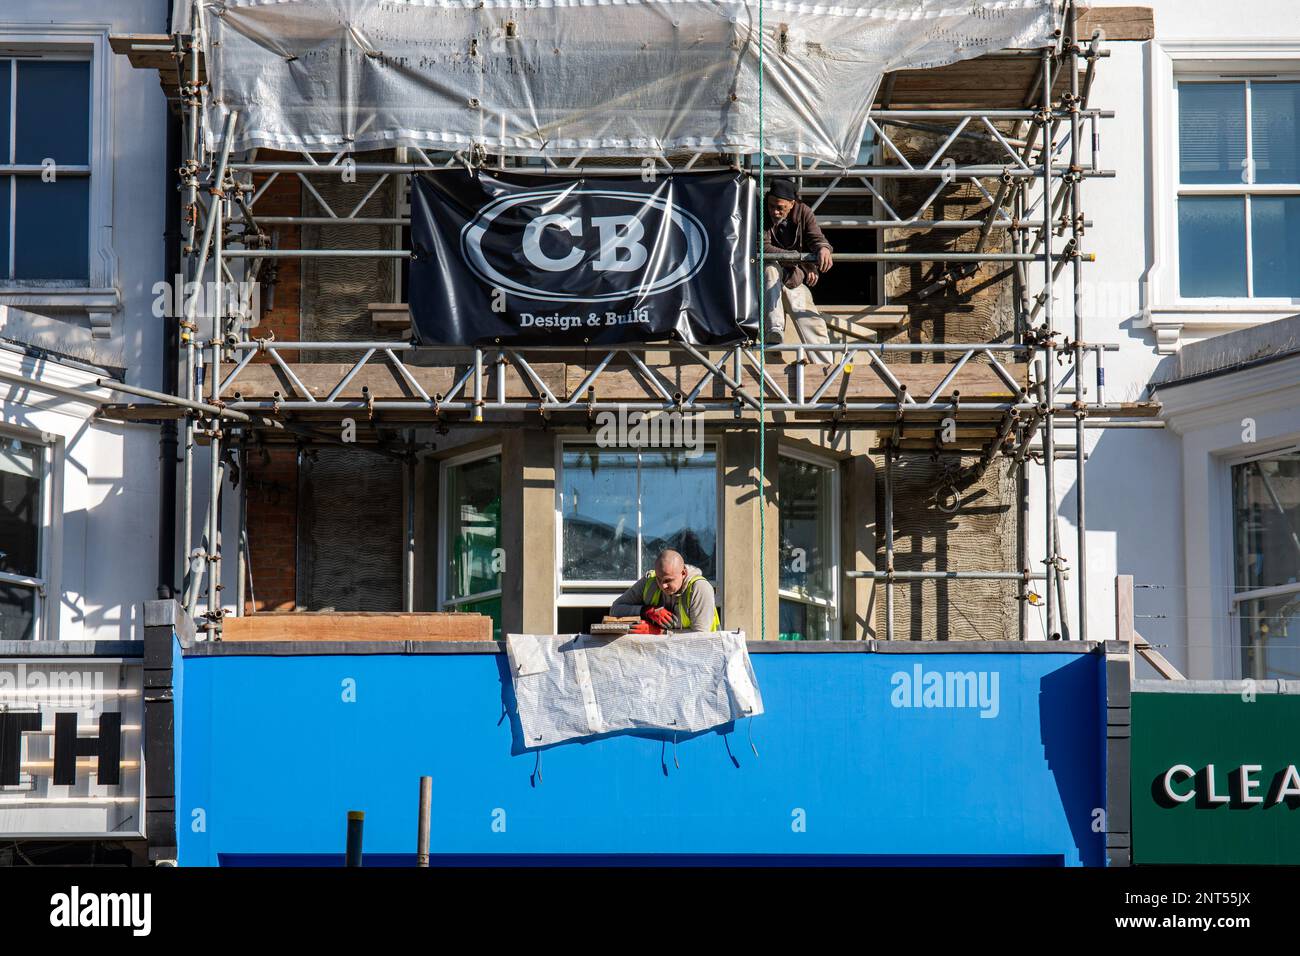 Ouvriers de la construction du site de rénovation CB Design & Build sur Portobello Road dans le quartier de Notting Hill à Londres, en Angleterre Banque D'Images